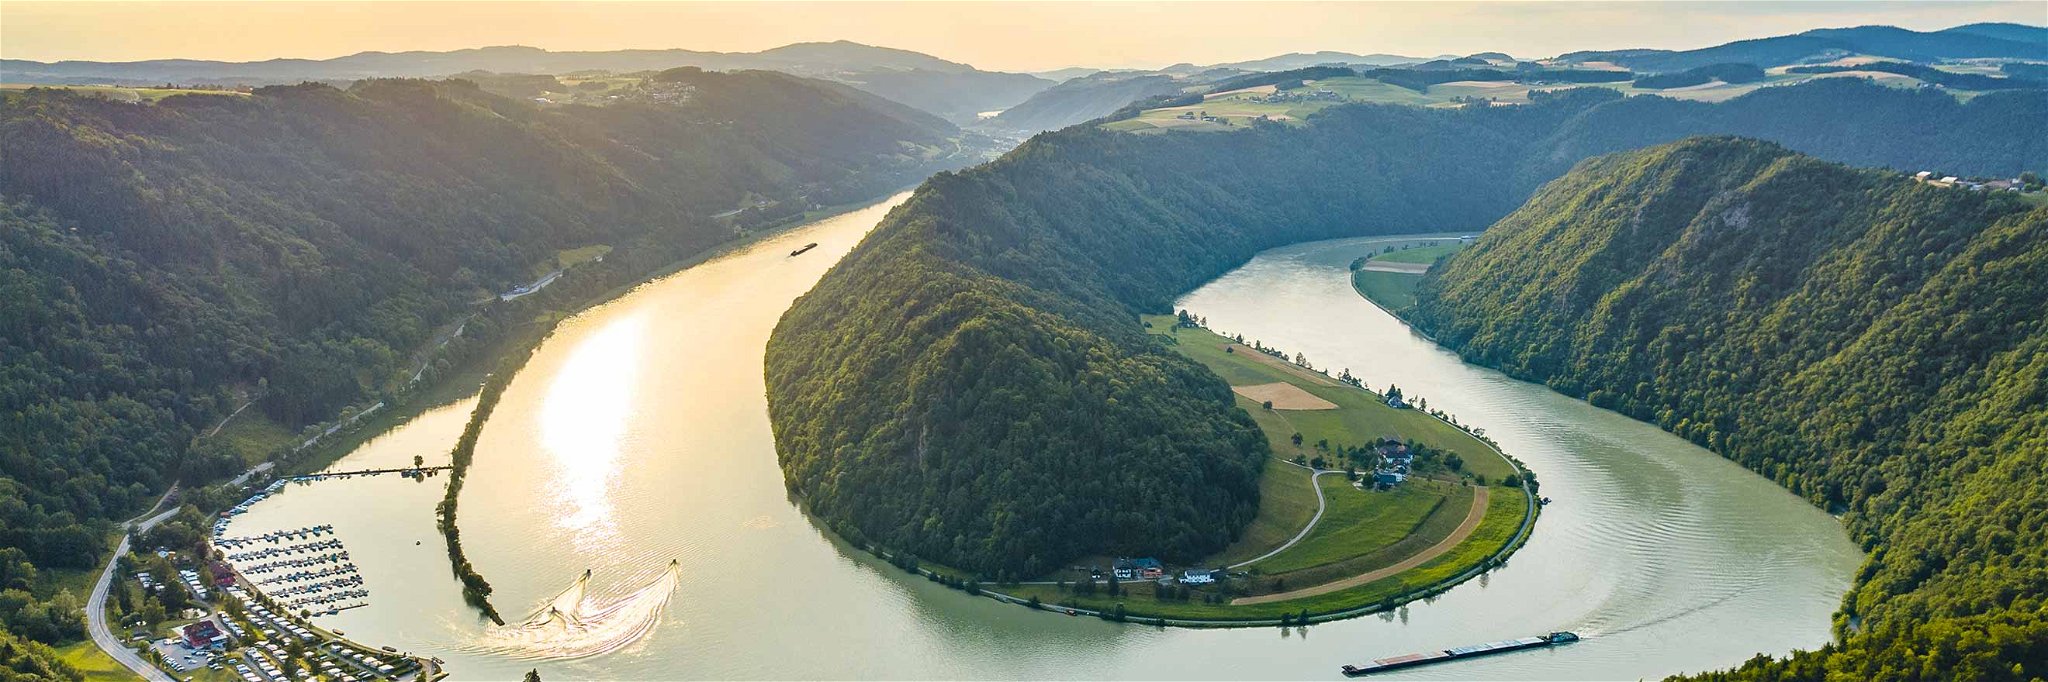 Naturhighlight: die Donauschlinge in Schlögen auf halbem Weg zwischen Passau und Linz in Oberösterreich.